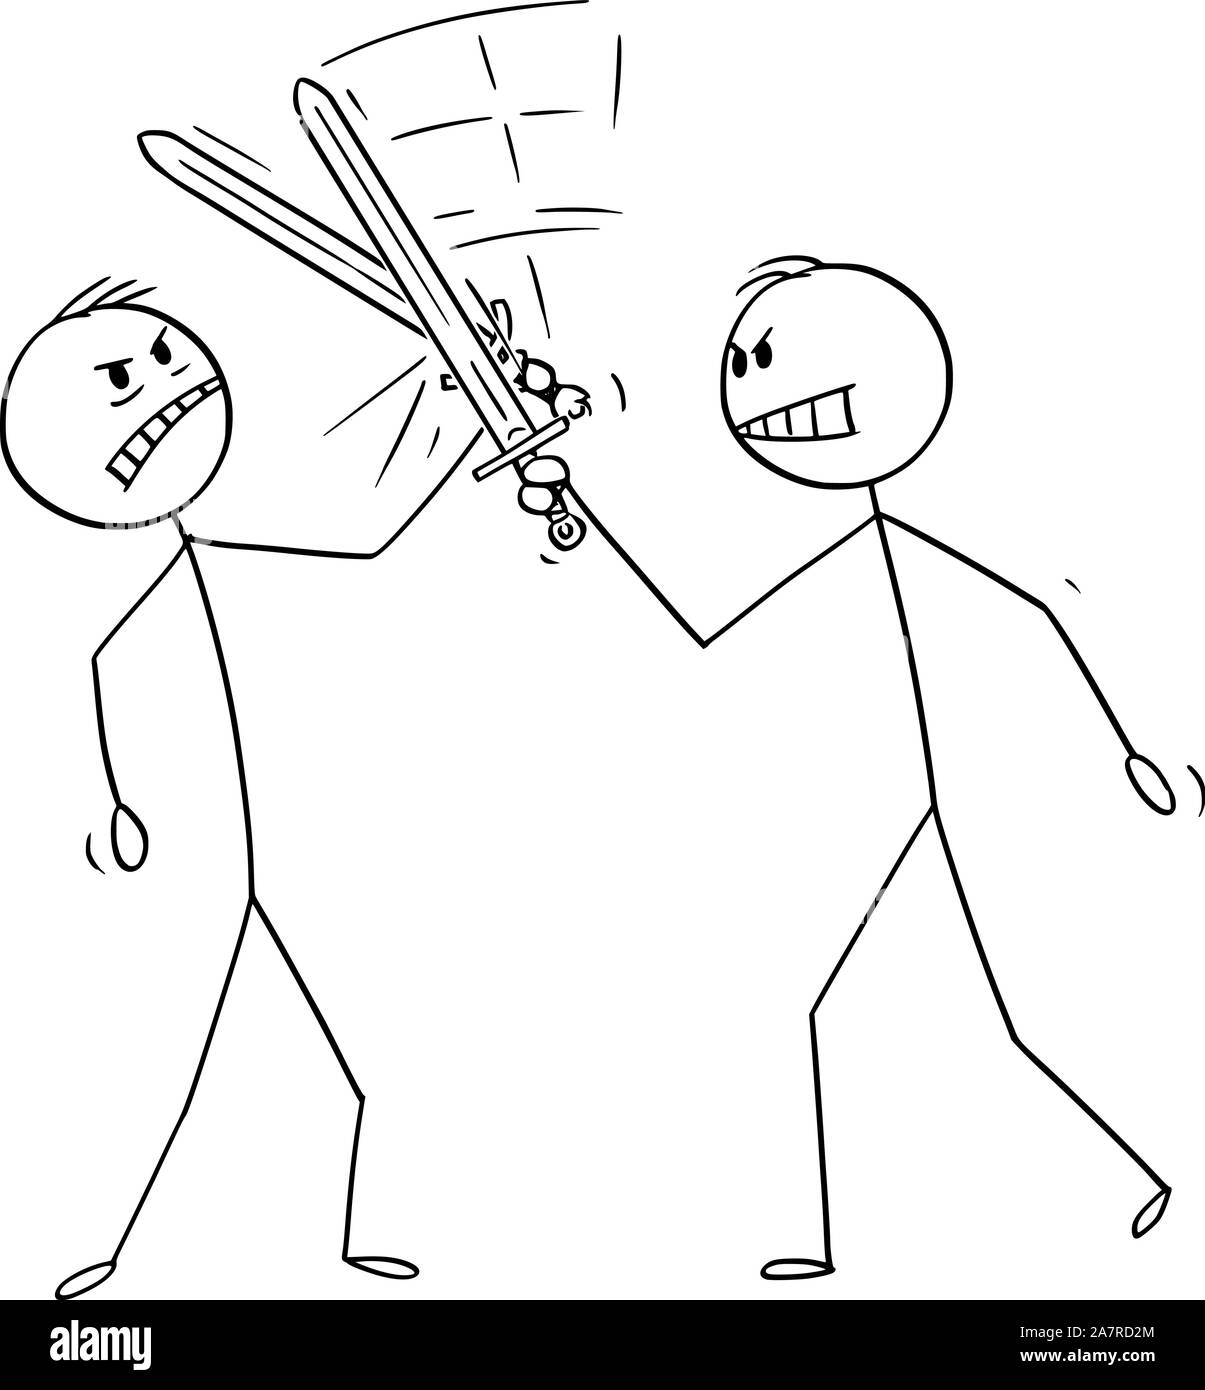 Cartoon vectores stick figura dibujo Ilustración conceptual de dos hombres o empresarios combates con espadas o vallas. Concepto de negocio de la competencia. Ilustración del Vector